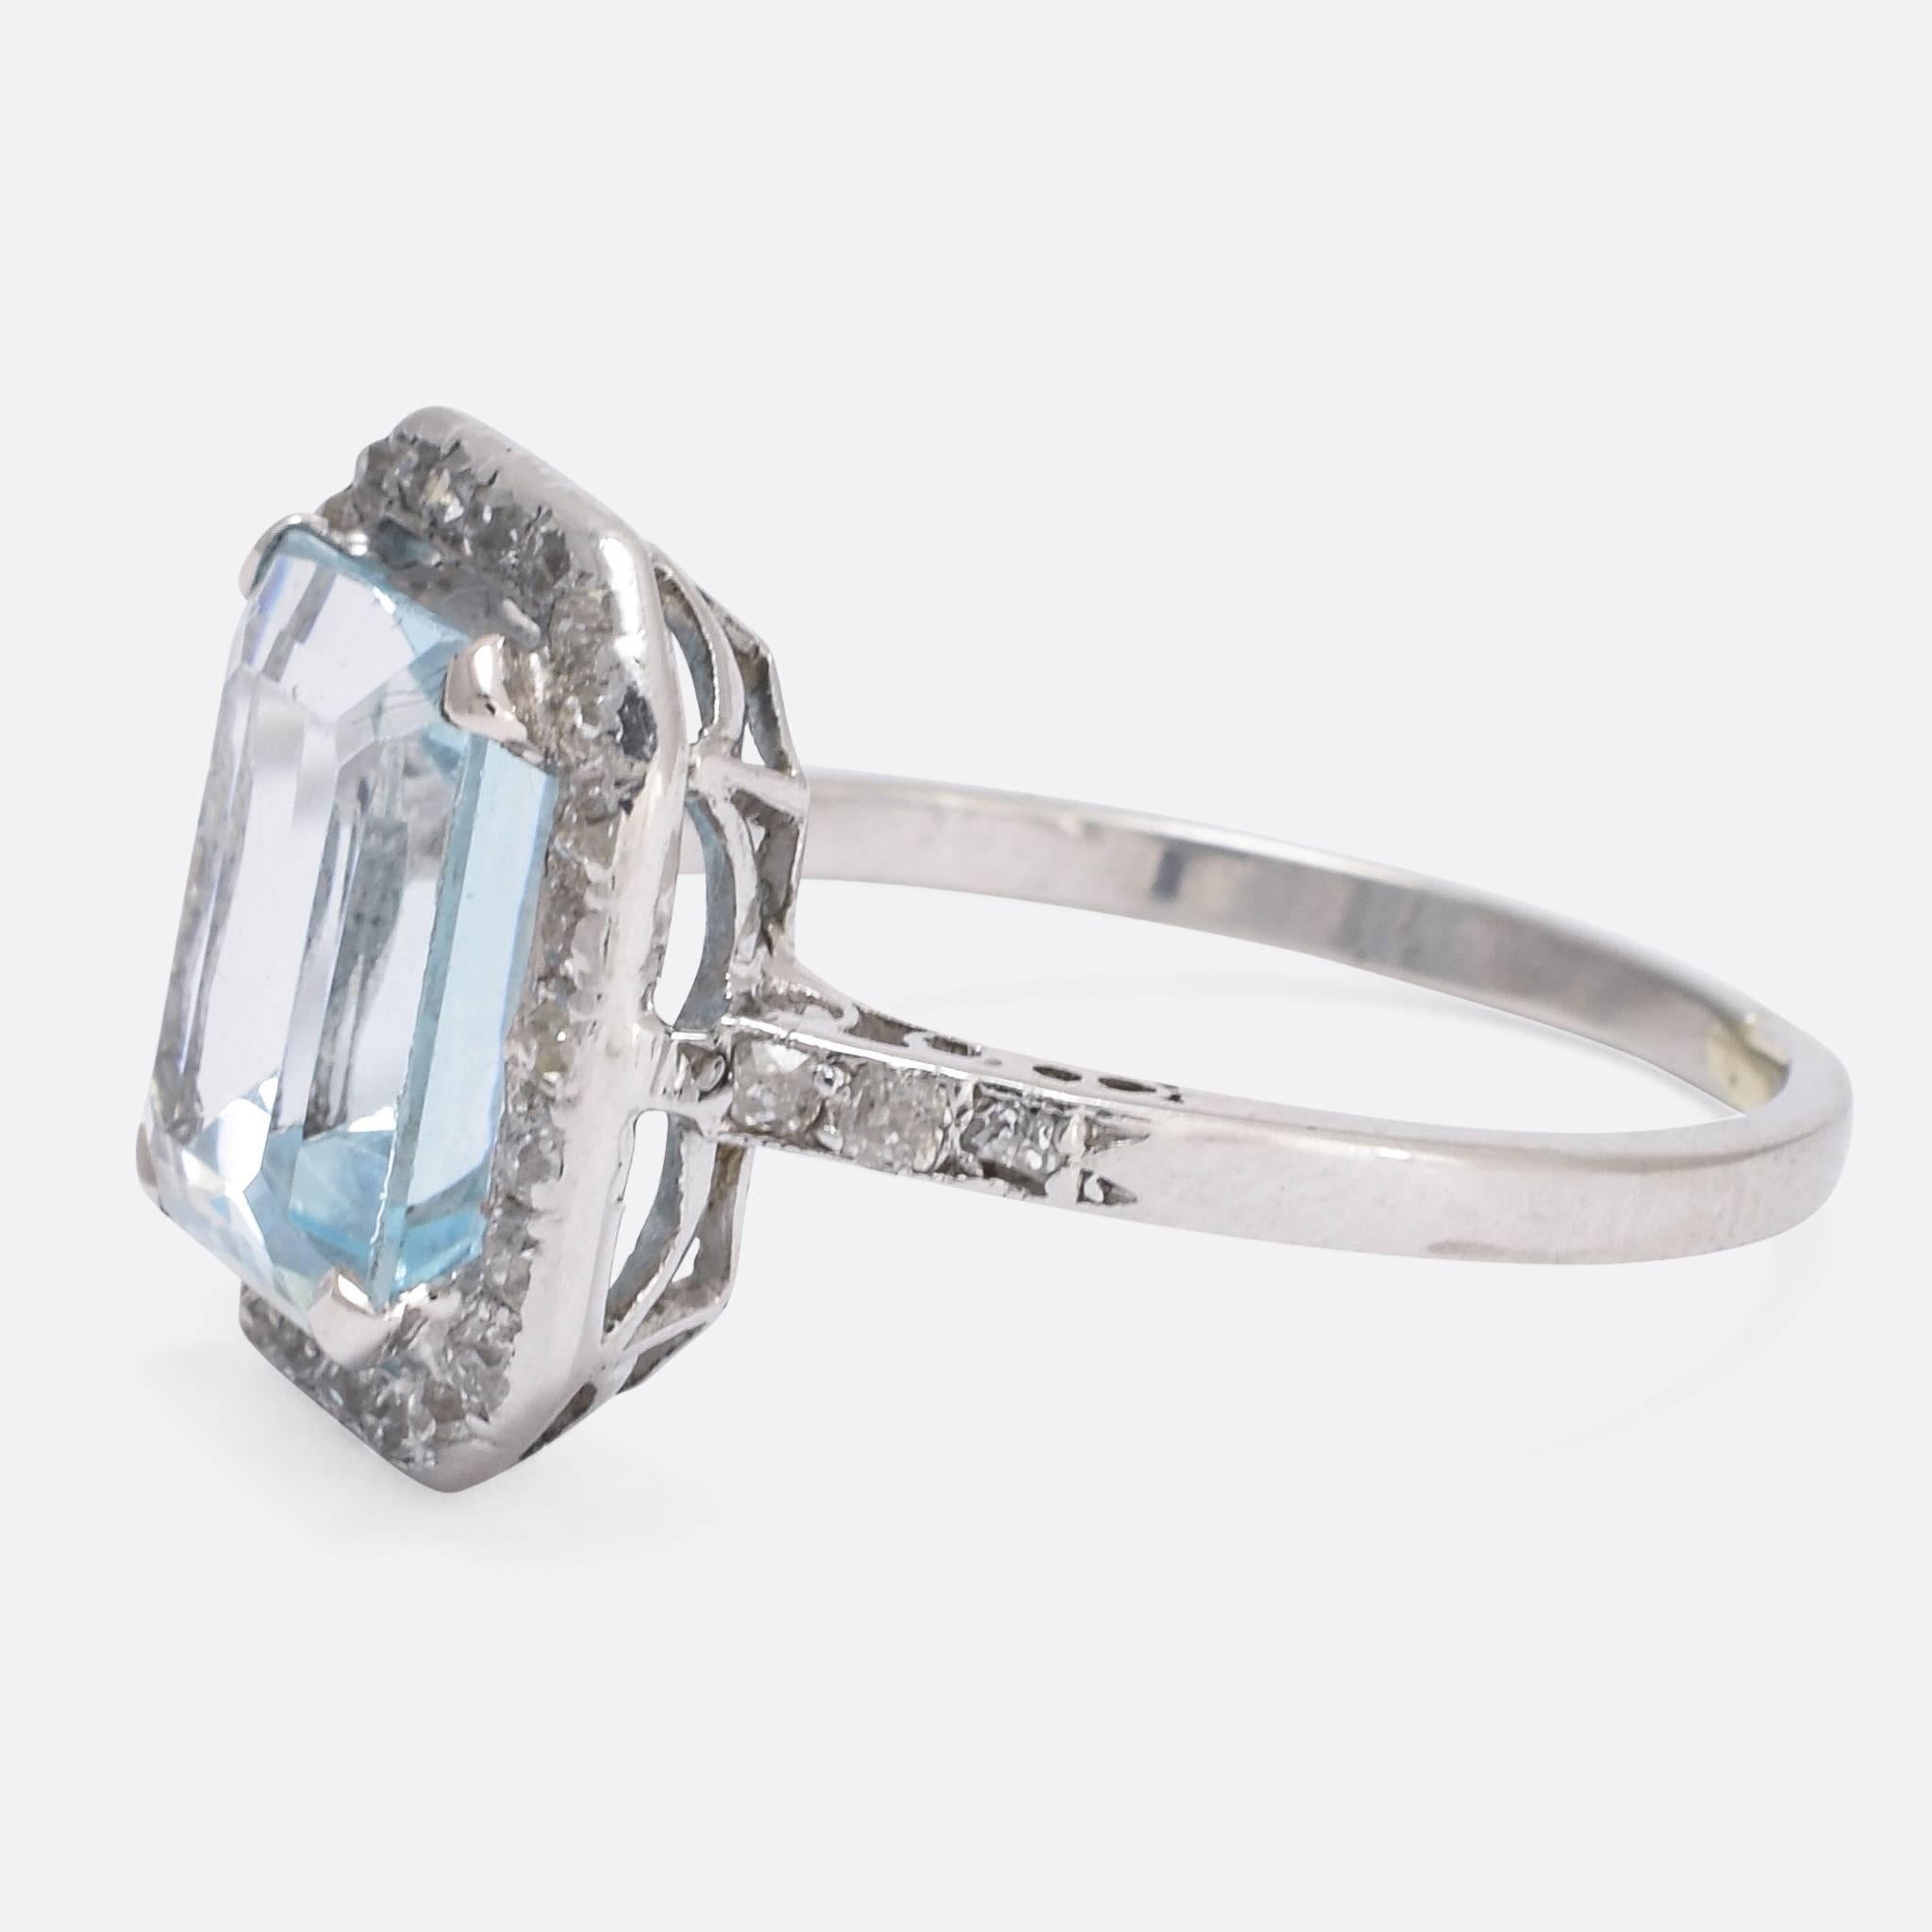 4 carat aquamarine ring